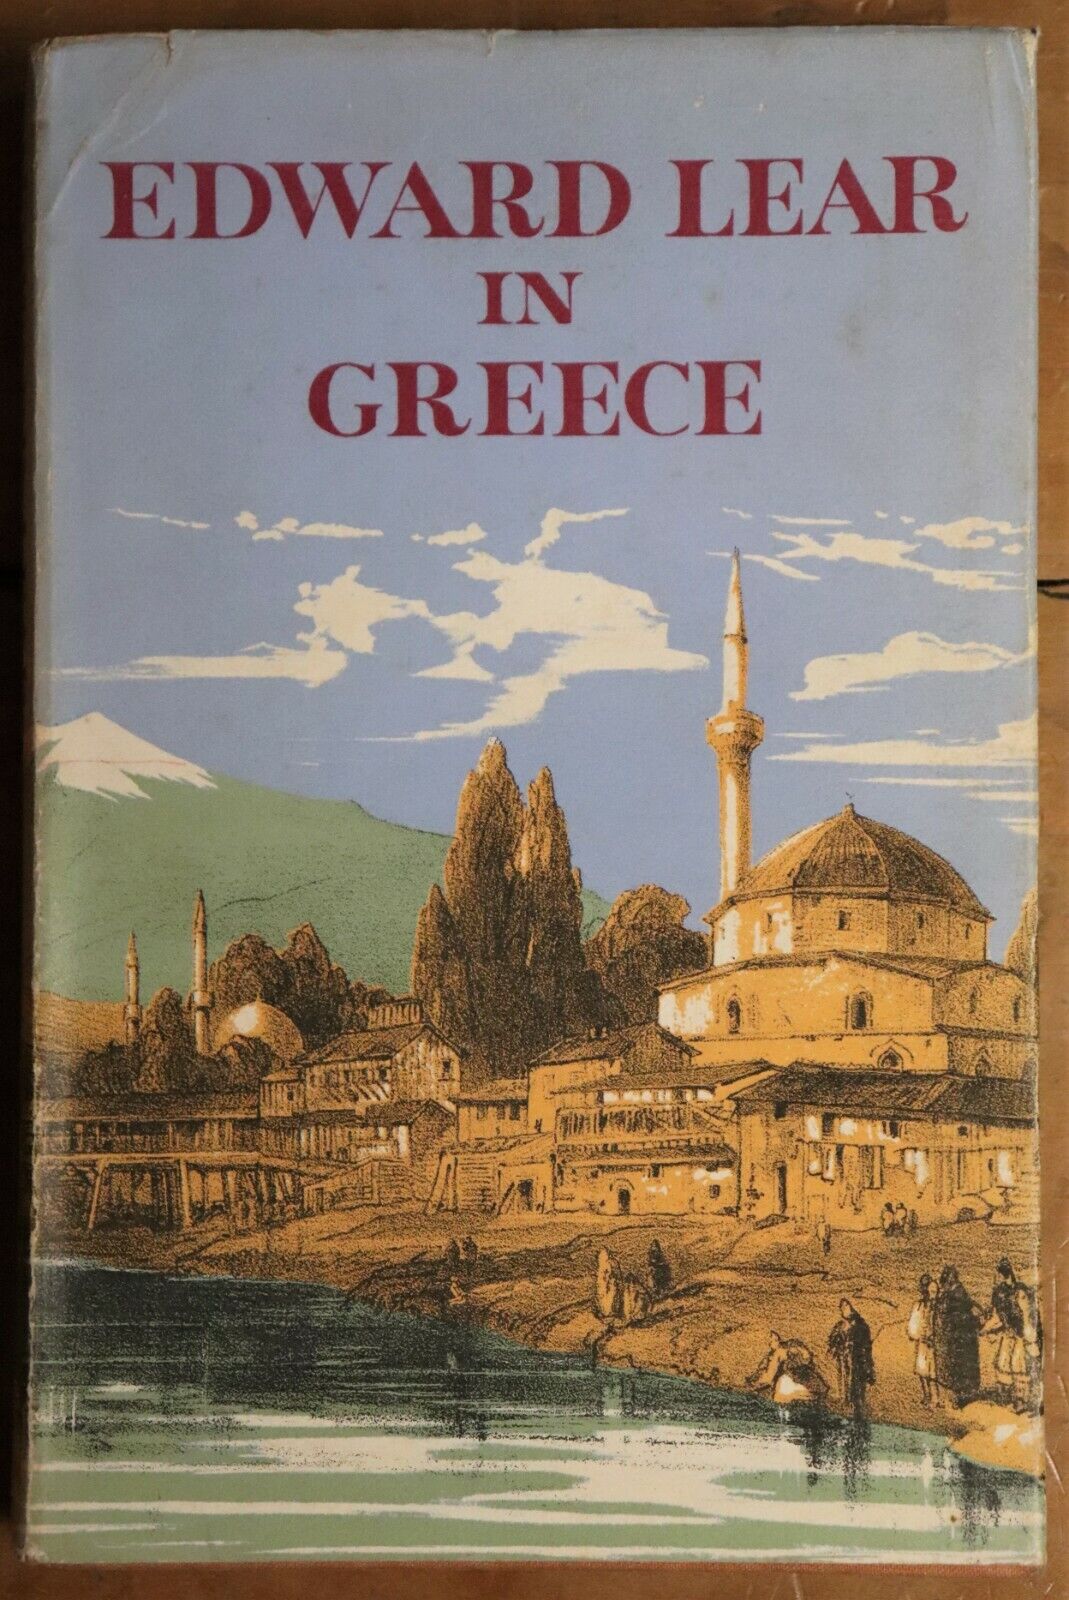 Edward Lear In Greece - 1965 - 1st Edition - Landscape Artist